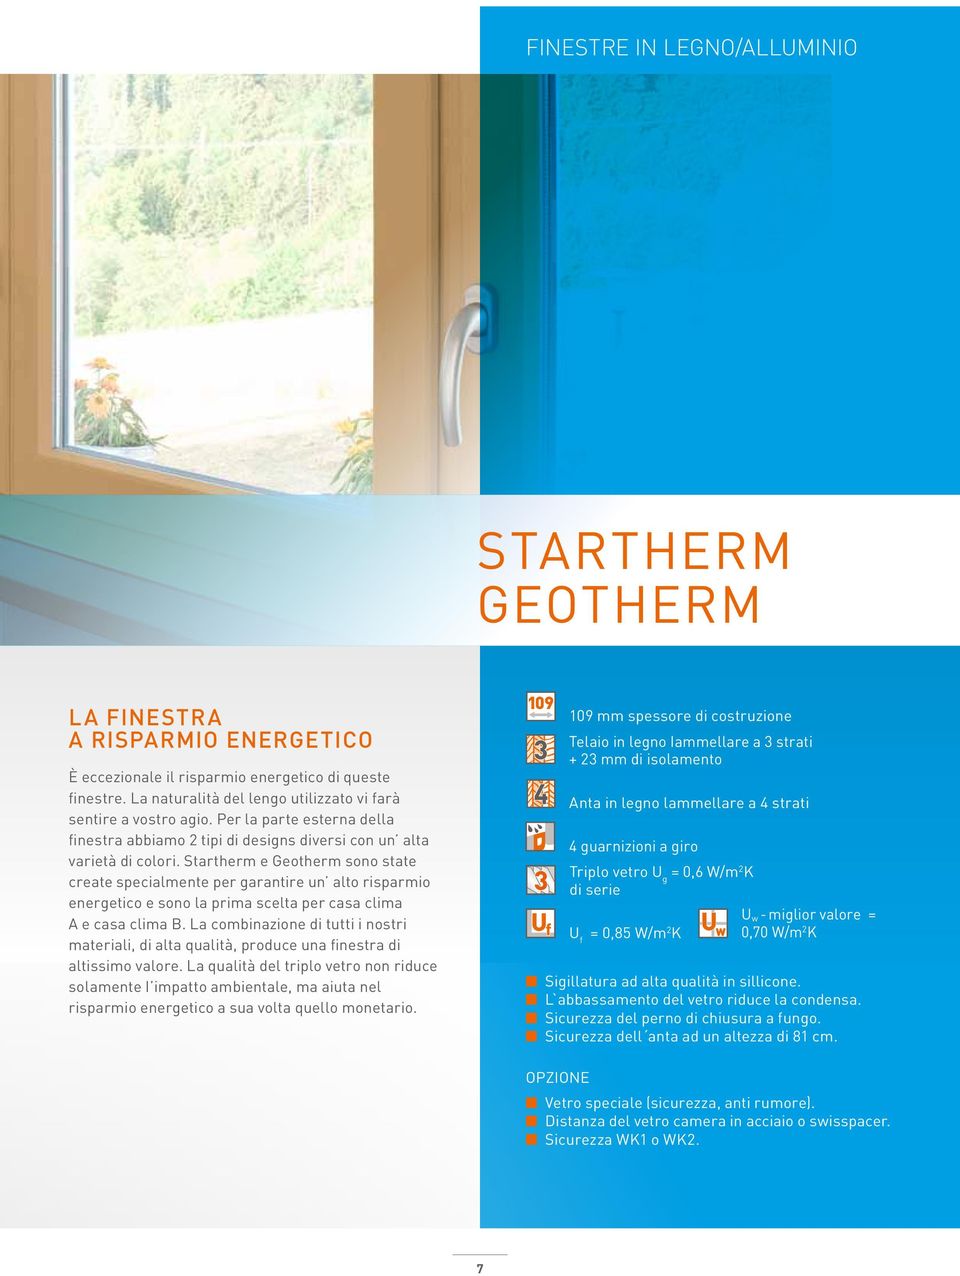 Startherm e Geotherm sono state create specialmente per garantire un alto risparmio energetico e sono la prima scelta per casa clima A e casa clima B.